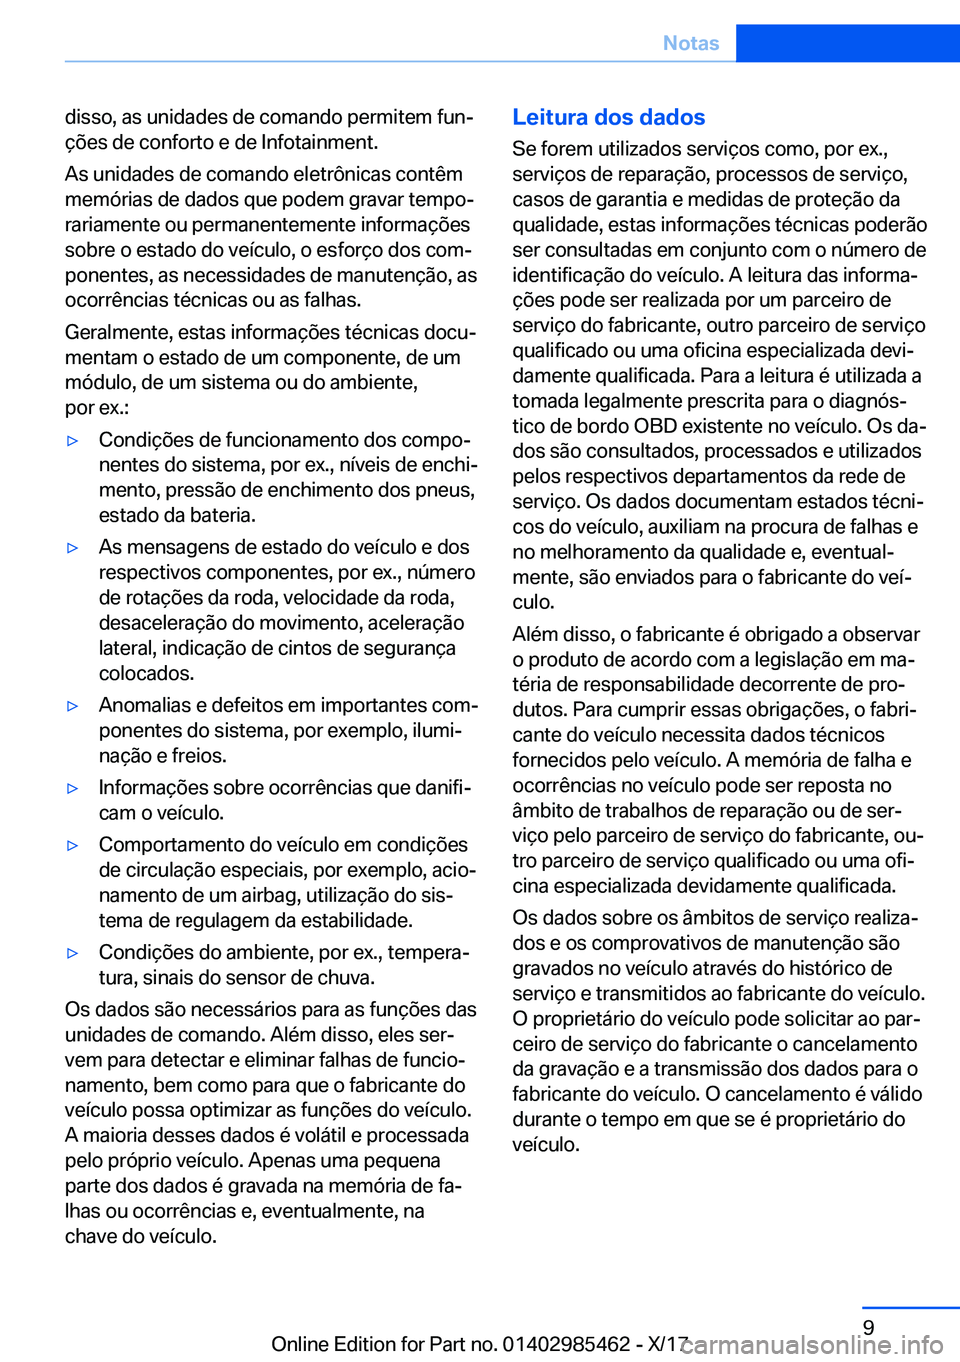 BMW X1 2018  Manual do condutor (in Portuguese) �d�i�s�s�o�,� �a�s� �u�n�i�d�a�d�e�s� �d�e� �c�o�m�a�n�d�o� �p�e�r�m�i�t�e�m� �f�u�nª�